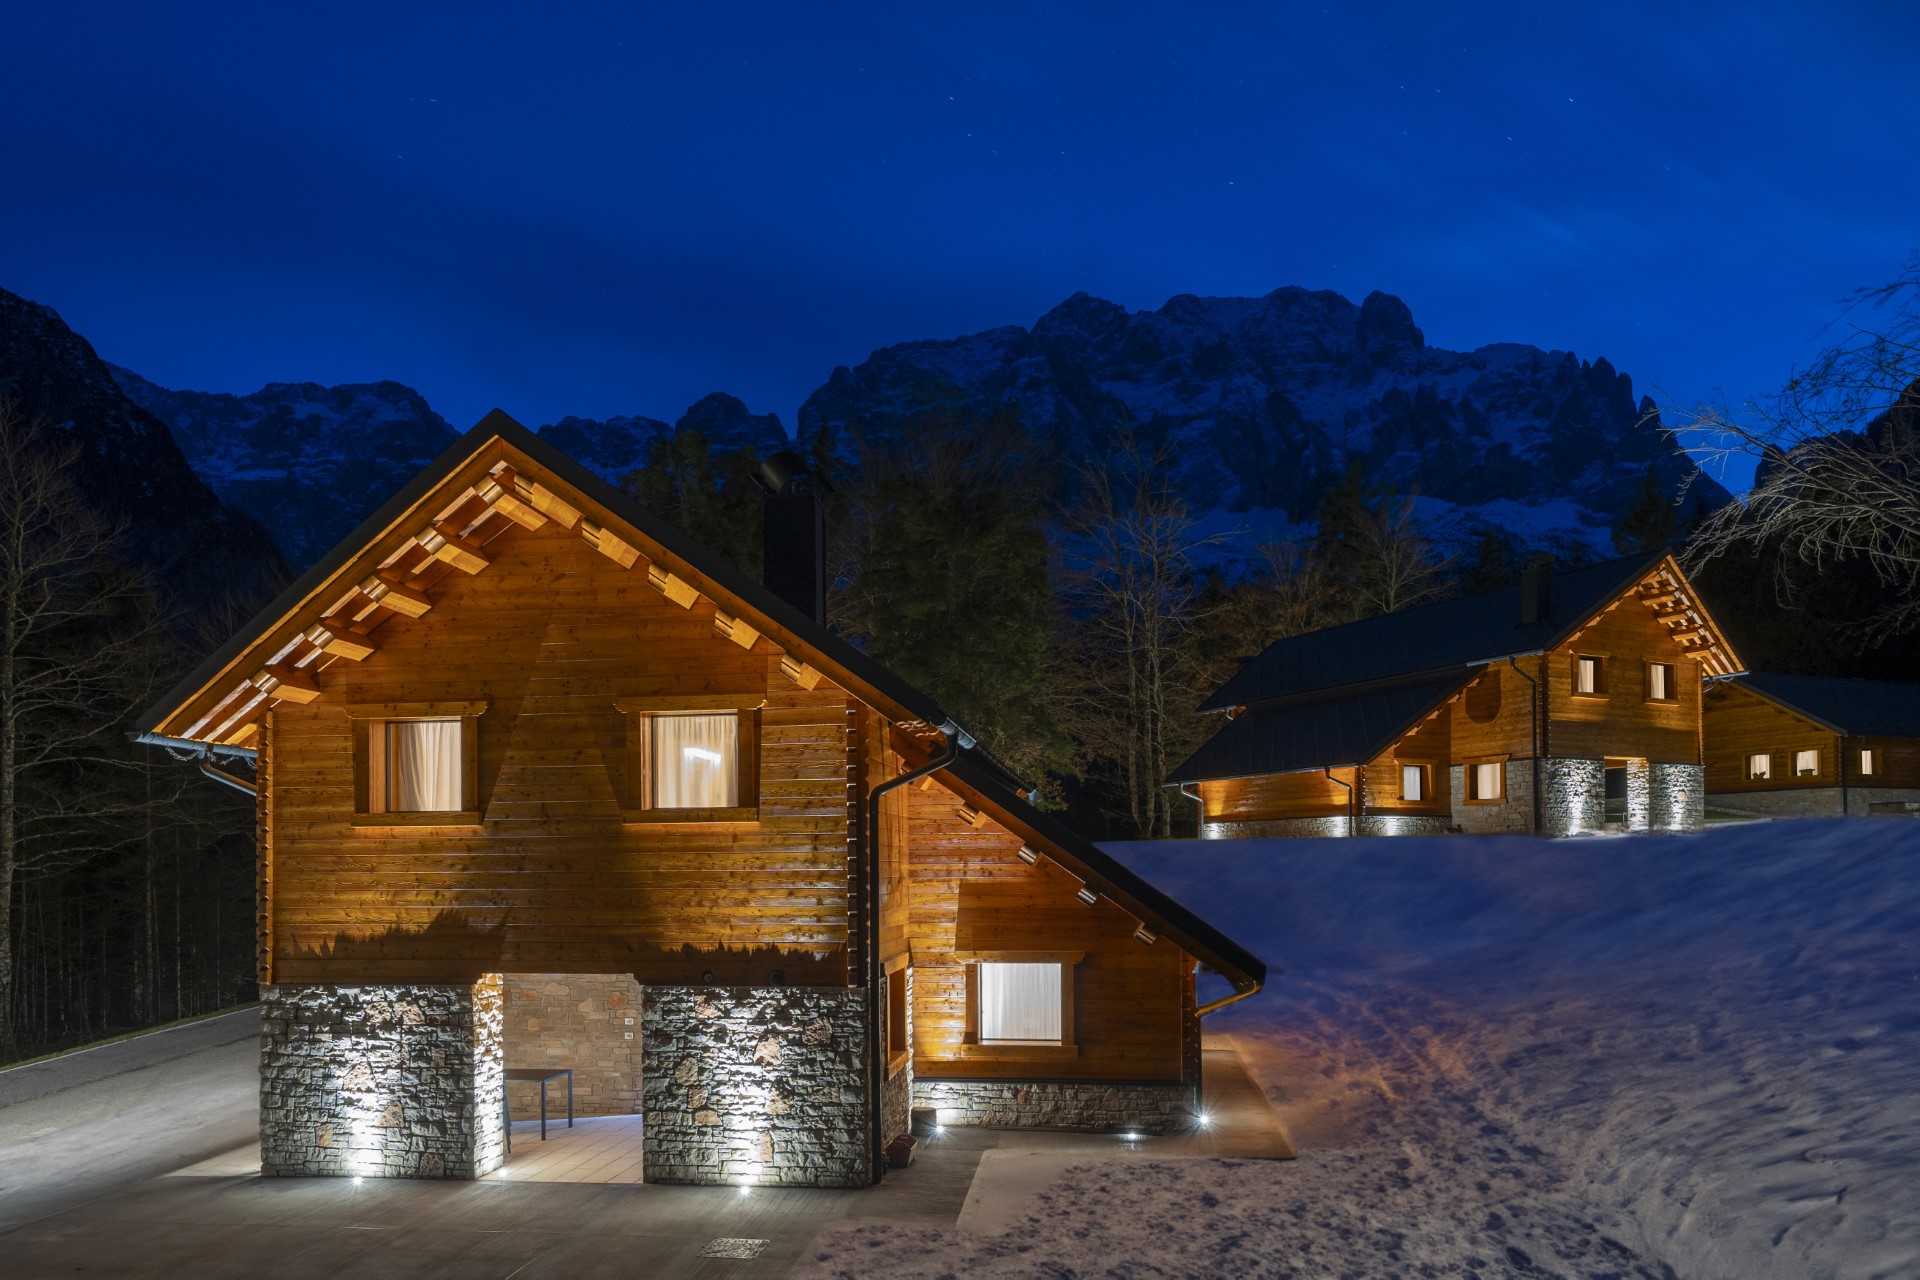 Kile Alpine Resort